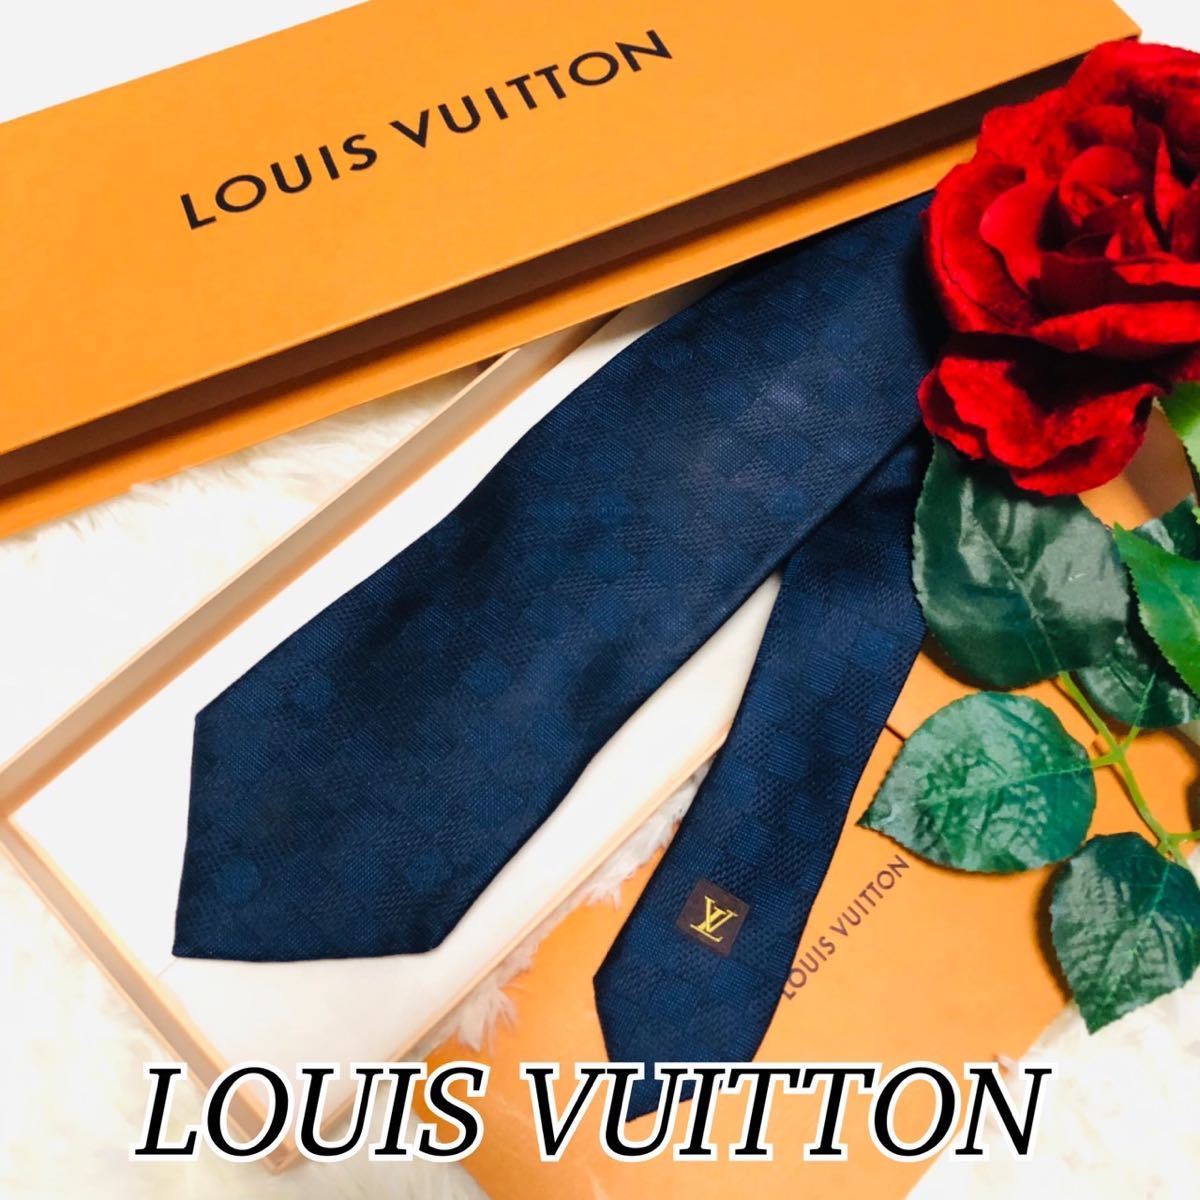 LOUIS VUITTON ルイヴィトン メンズ 男性 紳士 ネクタイ ブランドネクタイ LV ダミエ ブルー 青 ビジネス 結婚式 シンプル 剣先 9.5cm_画像1